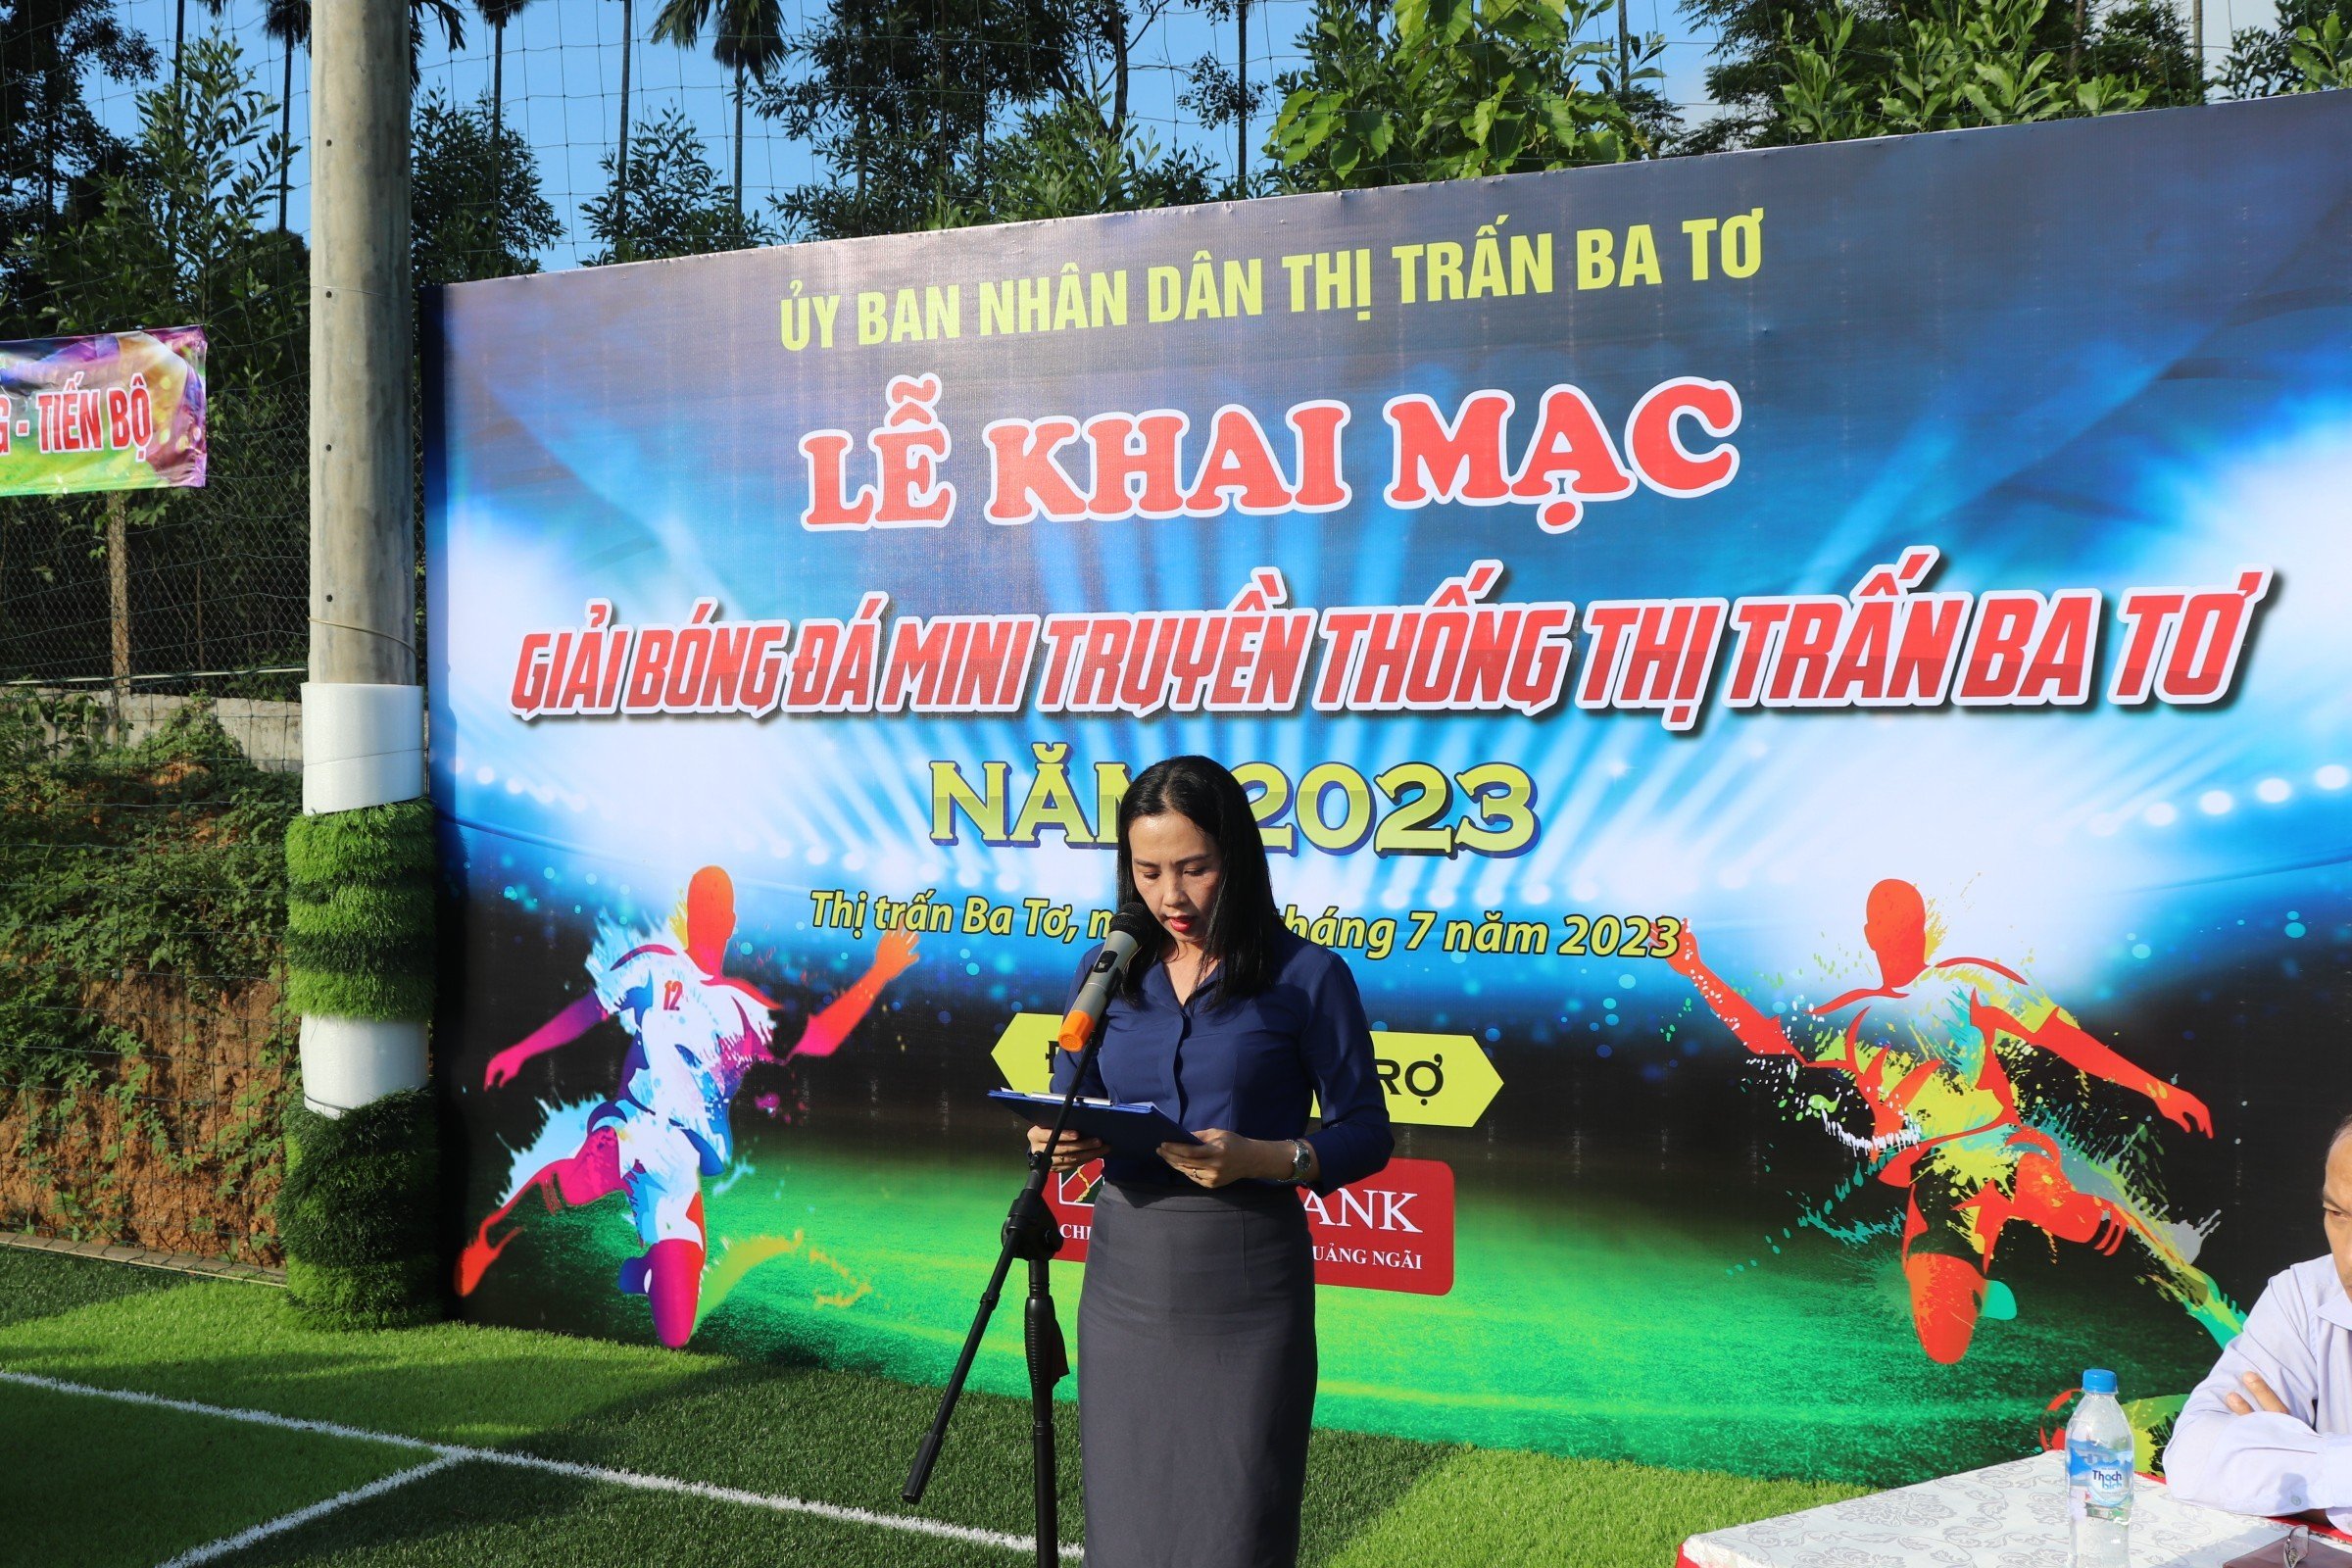 UBND thị trấn Ba Tơ tổ chức khai mạc giải bóng đá mini truyền thống năm 2023